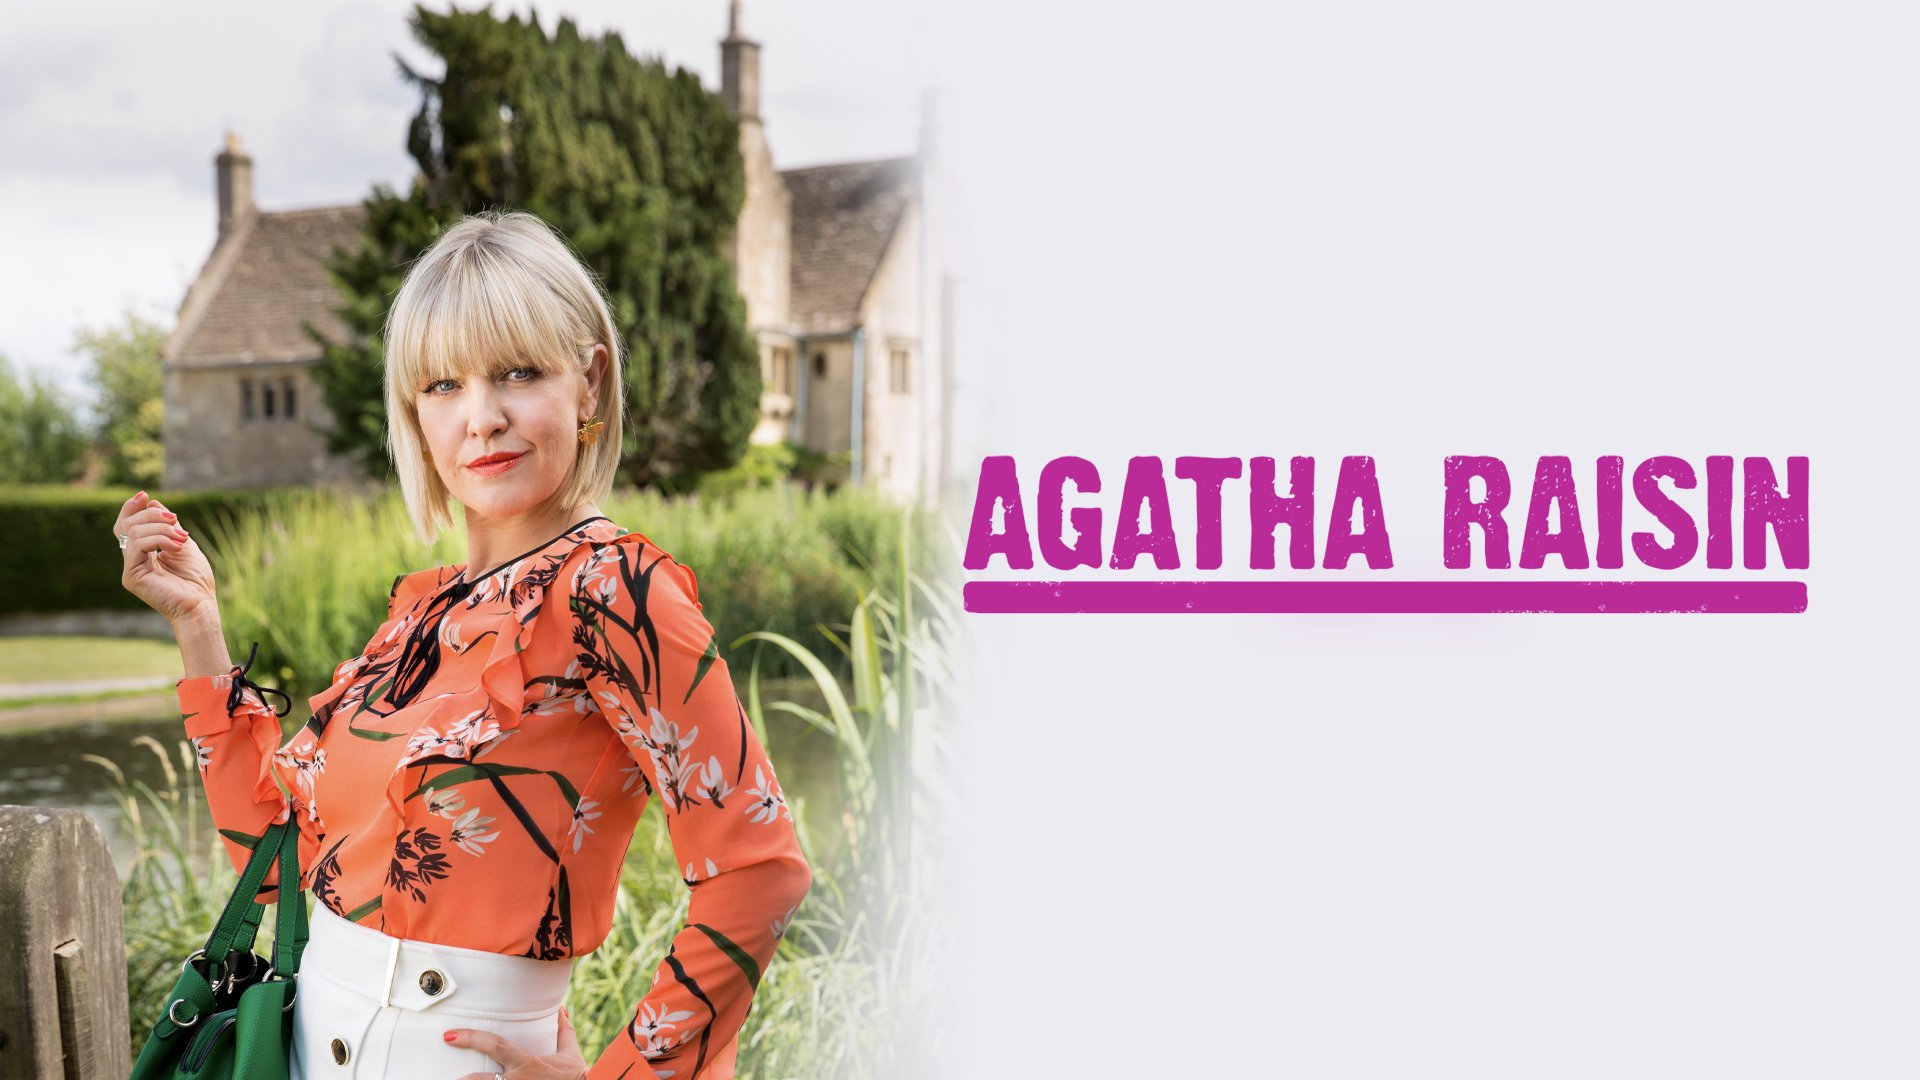 Watch Agatha Raisin Online - Stream Full Episodes